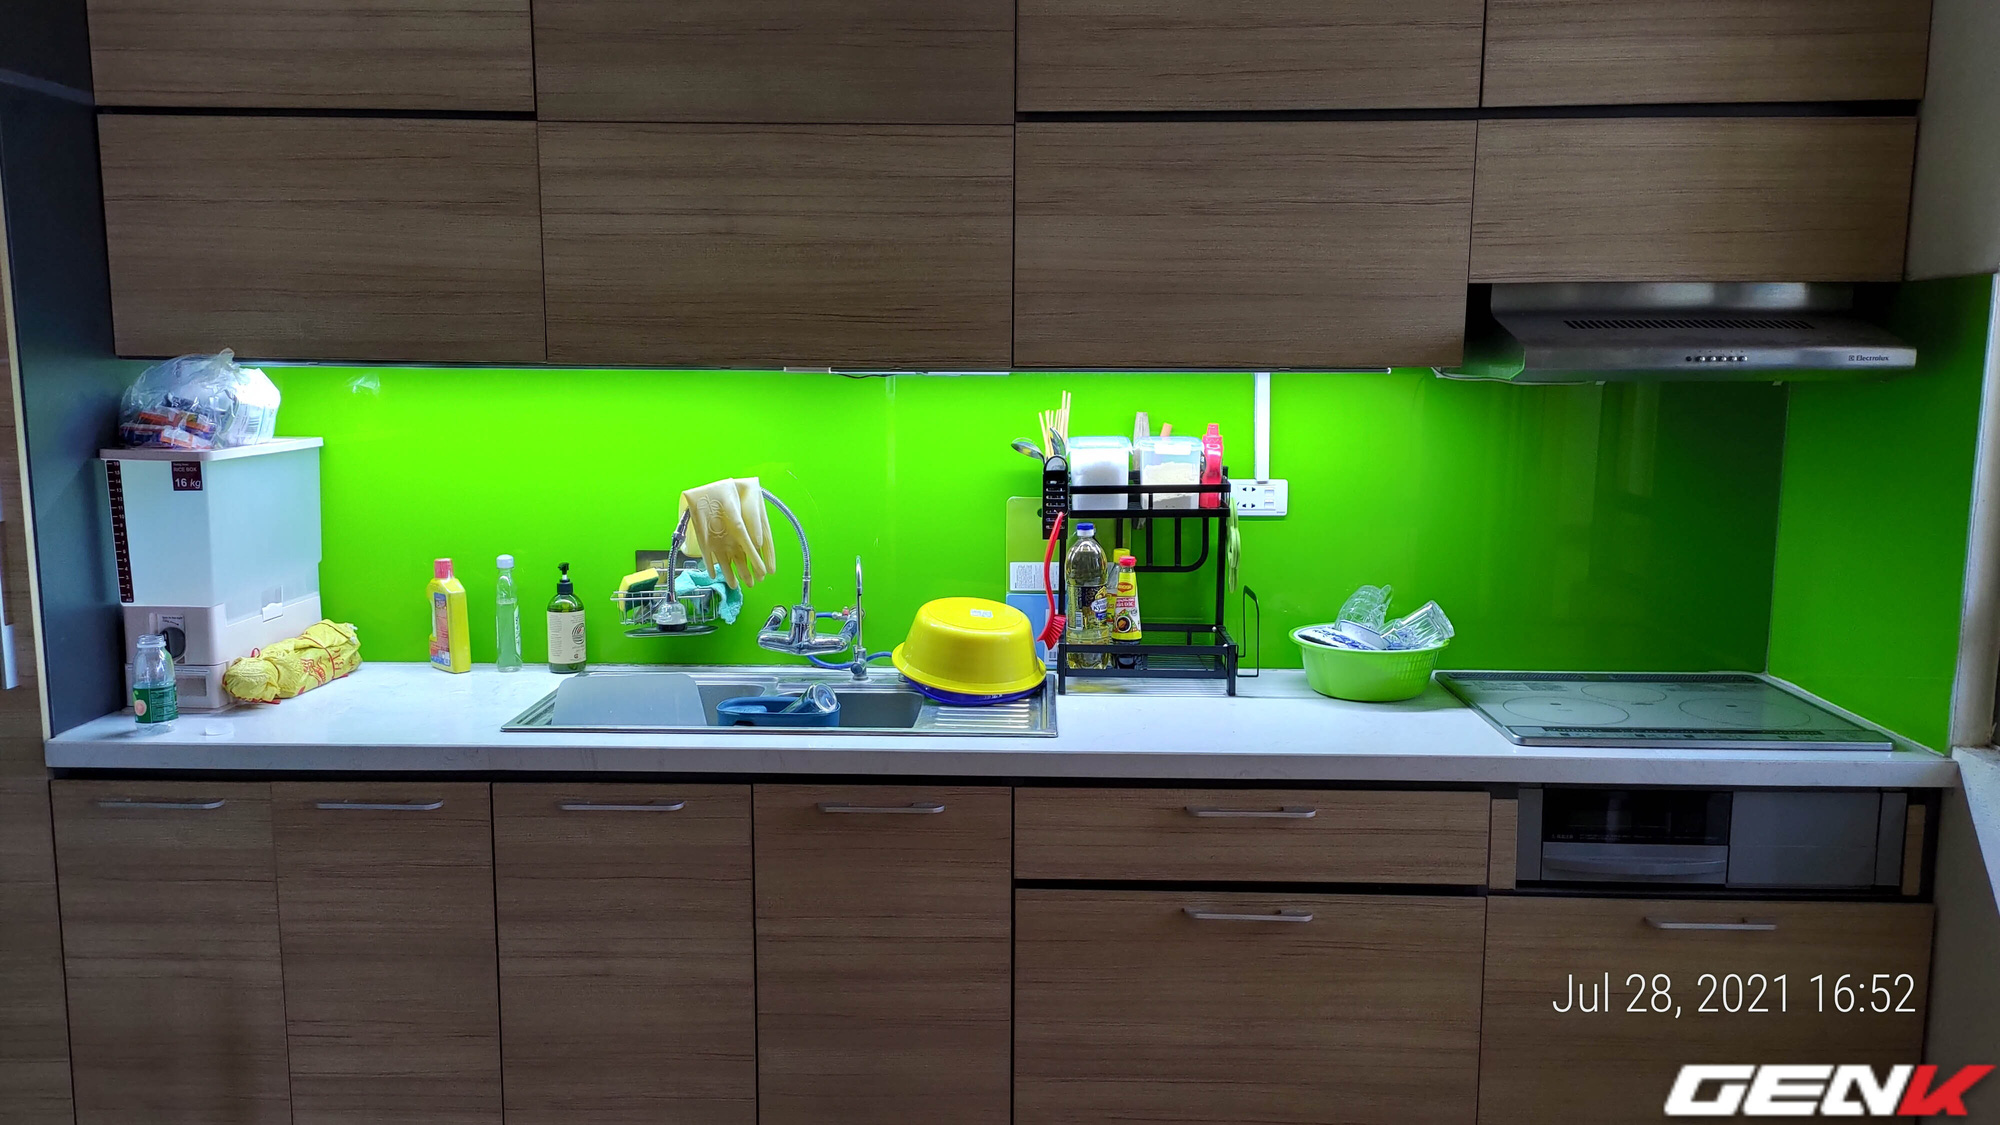 Tự lắp đèn LED tủ bếp để khắc phục đứng bếp bị tối và sấp bóng: cải thiện ánh sáng với chi phí thấp nhưng kết quả thì cực mỹ mãn! - Ảnh 31.